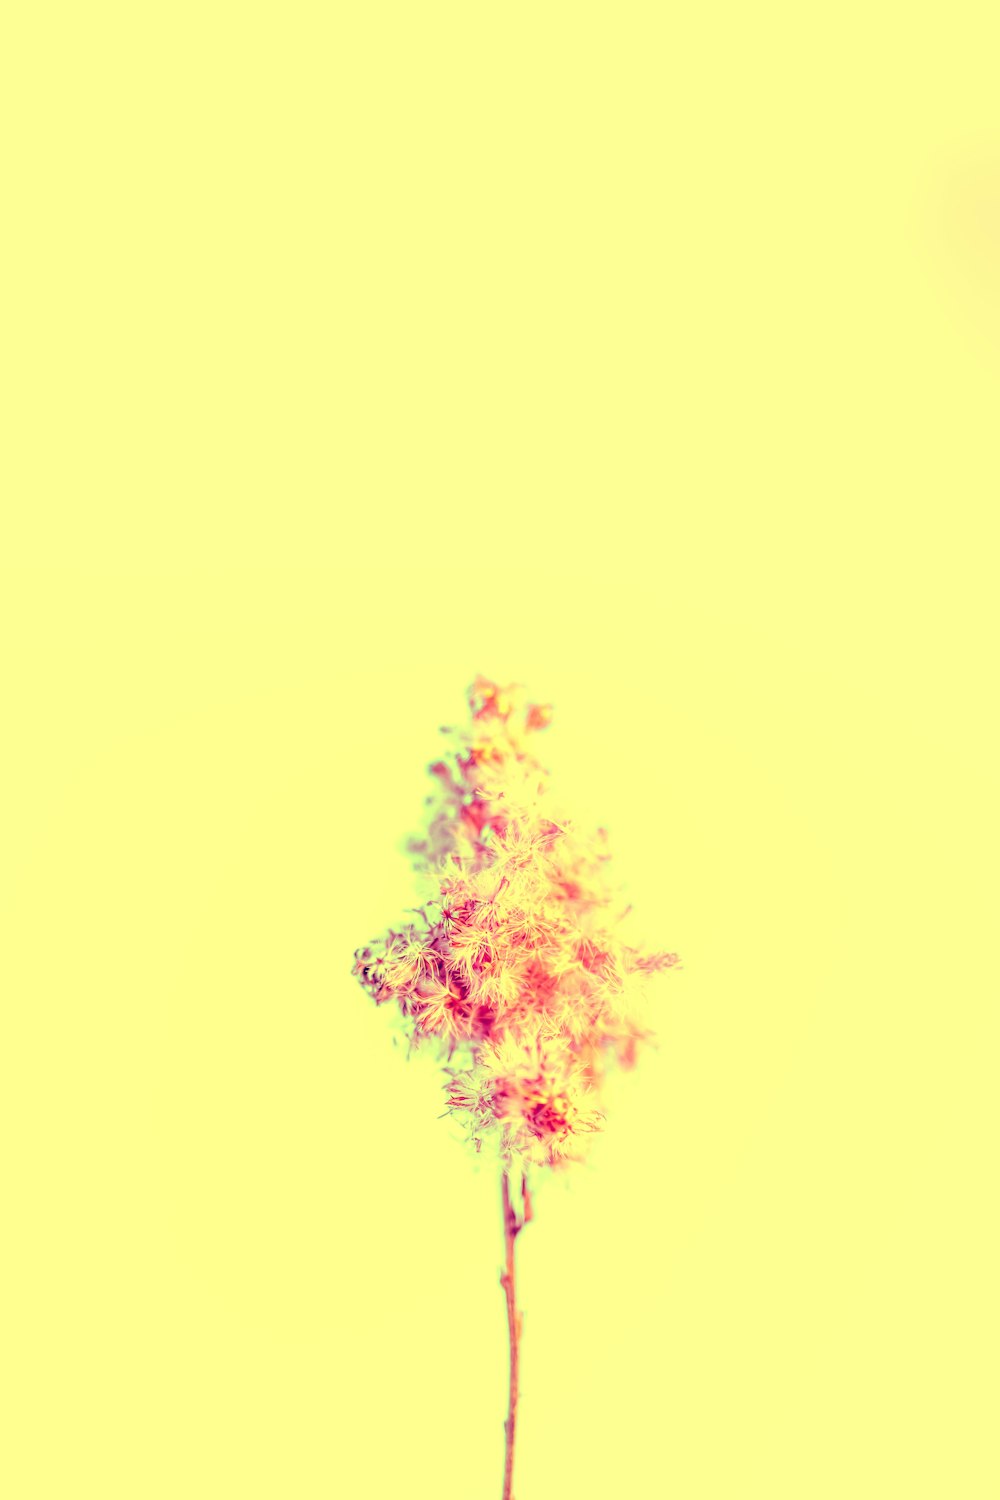 eine einzelne Blume in einer Vase auf gelbem Hintergrund